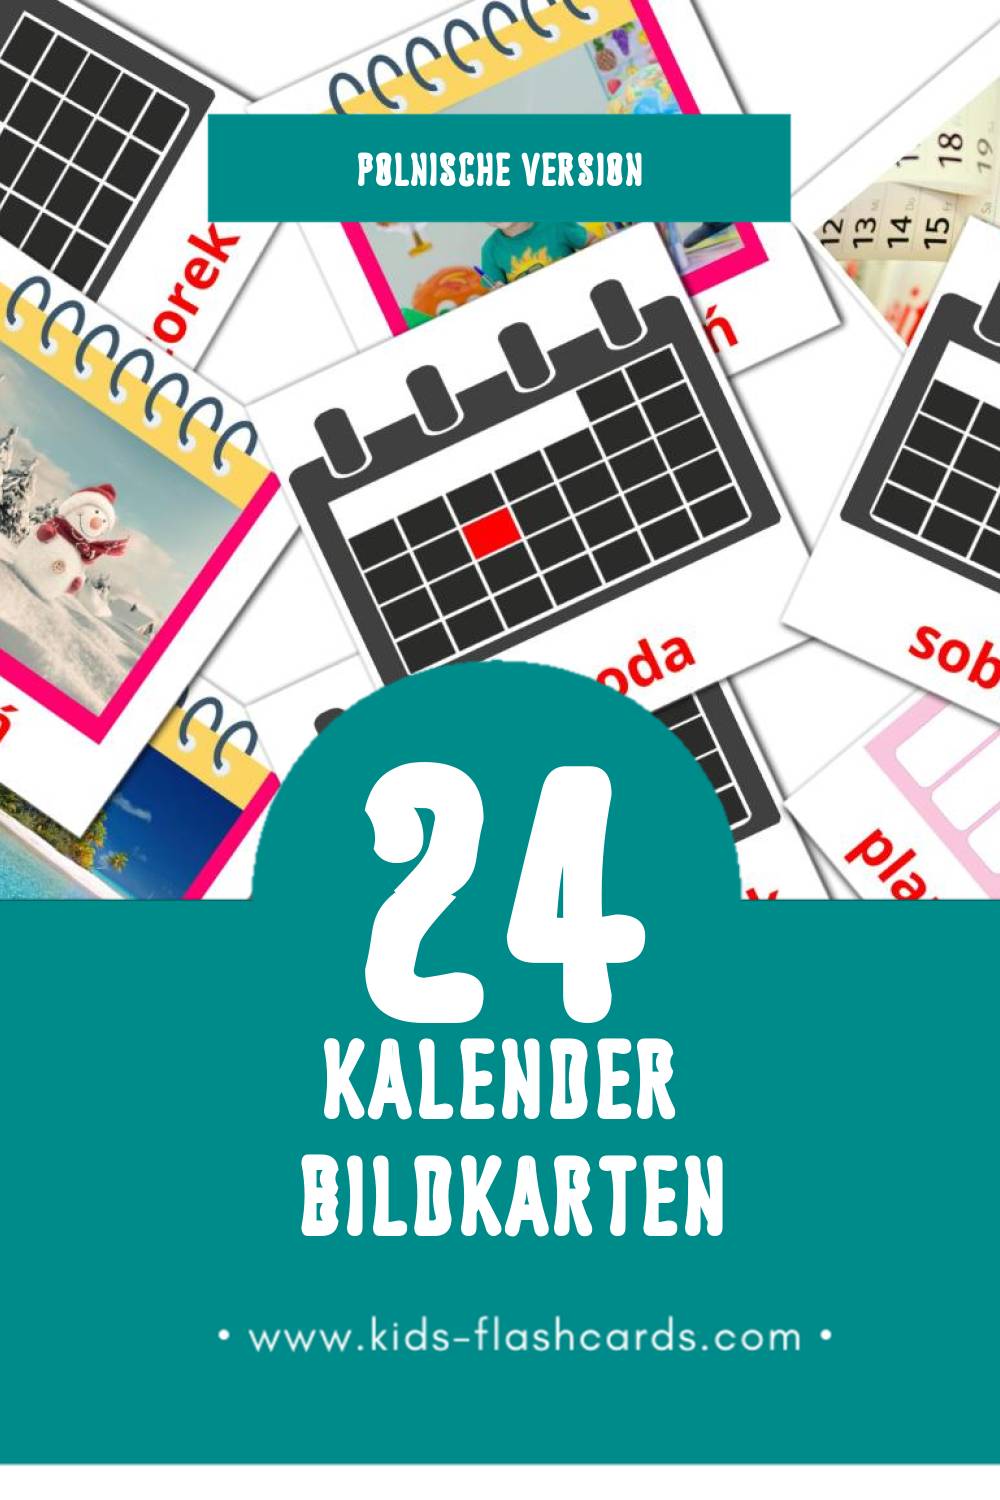 Visual Kalendarz Flashcards für Kleinkinder (24 Karten in Polnisch)